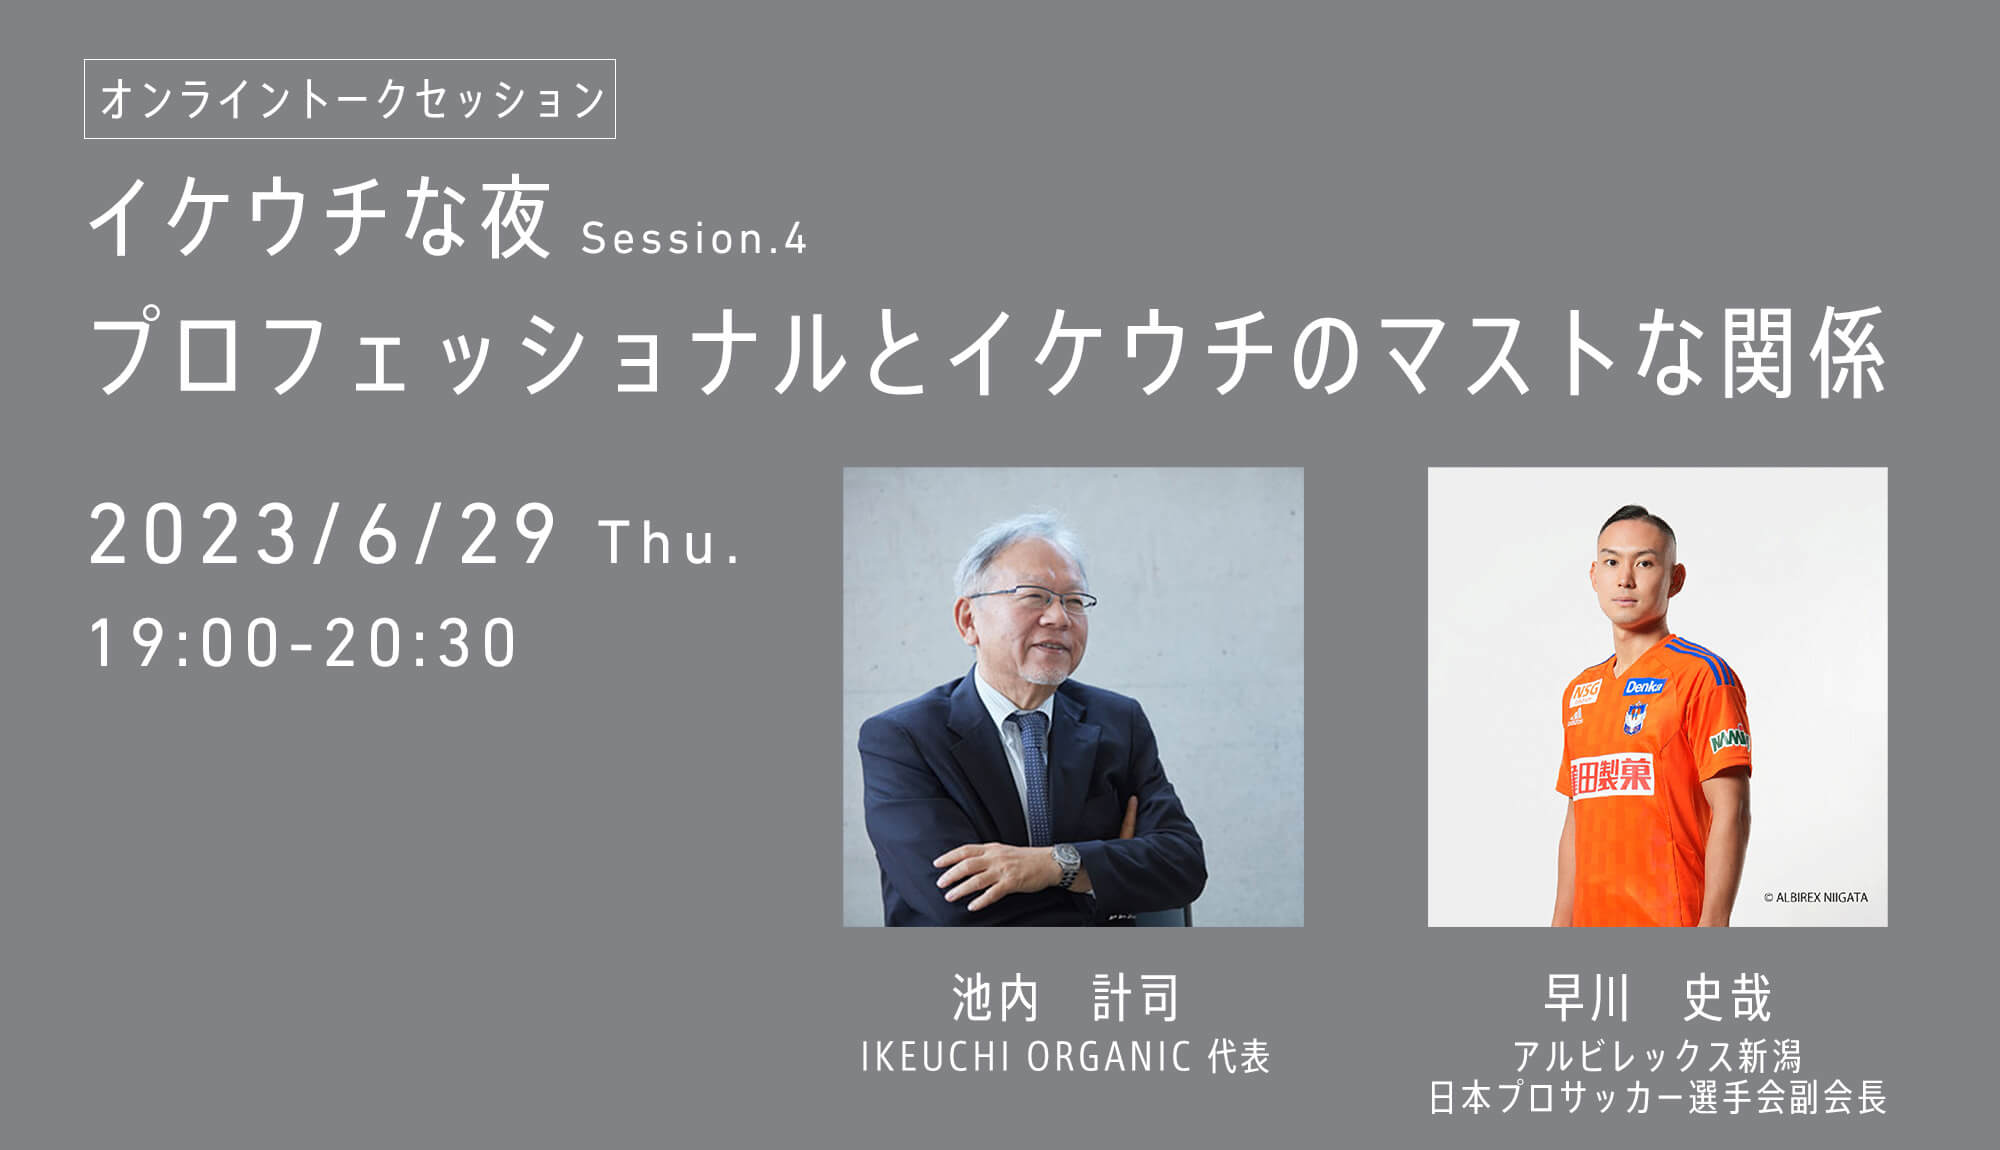 イケウチな夜 Session.4〜プロフェッショナルとIKEUCHI ORGANICのマストな関係〜開催のお知らせ